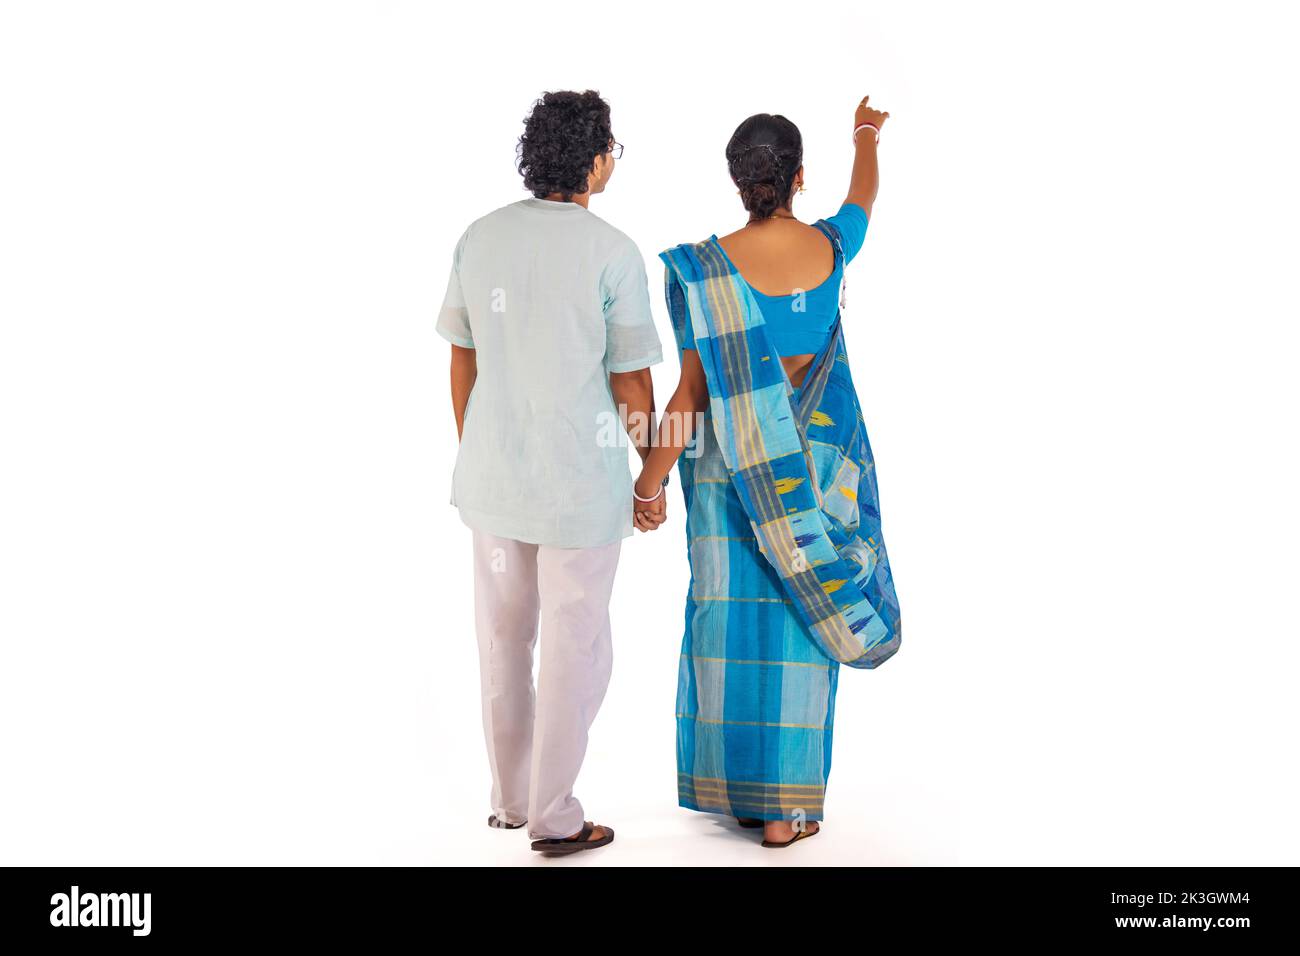 Rückansicht des bengalischen Paares, das vor weißem Hintergrund steht Stockfoto